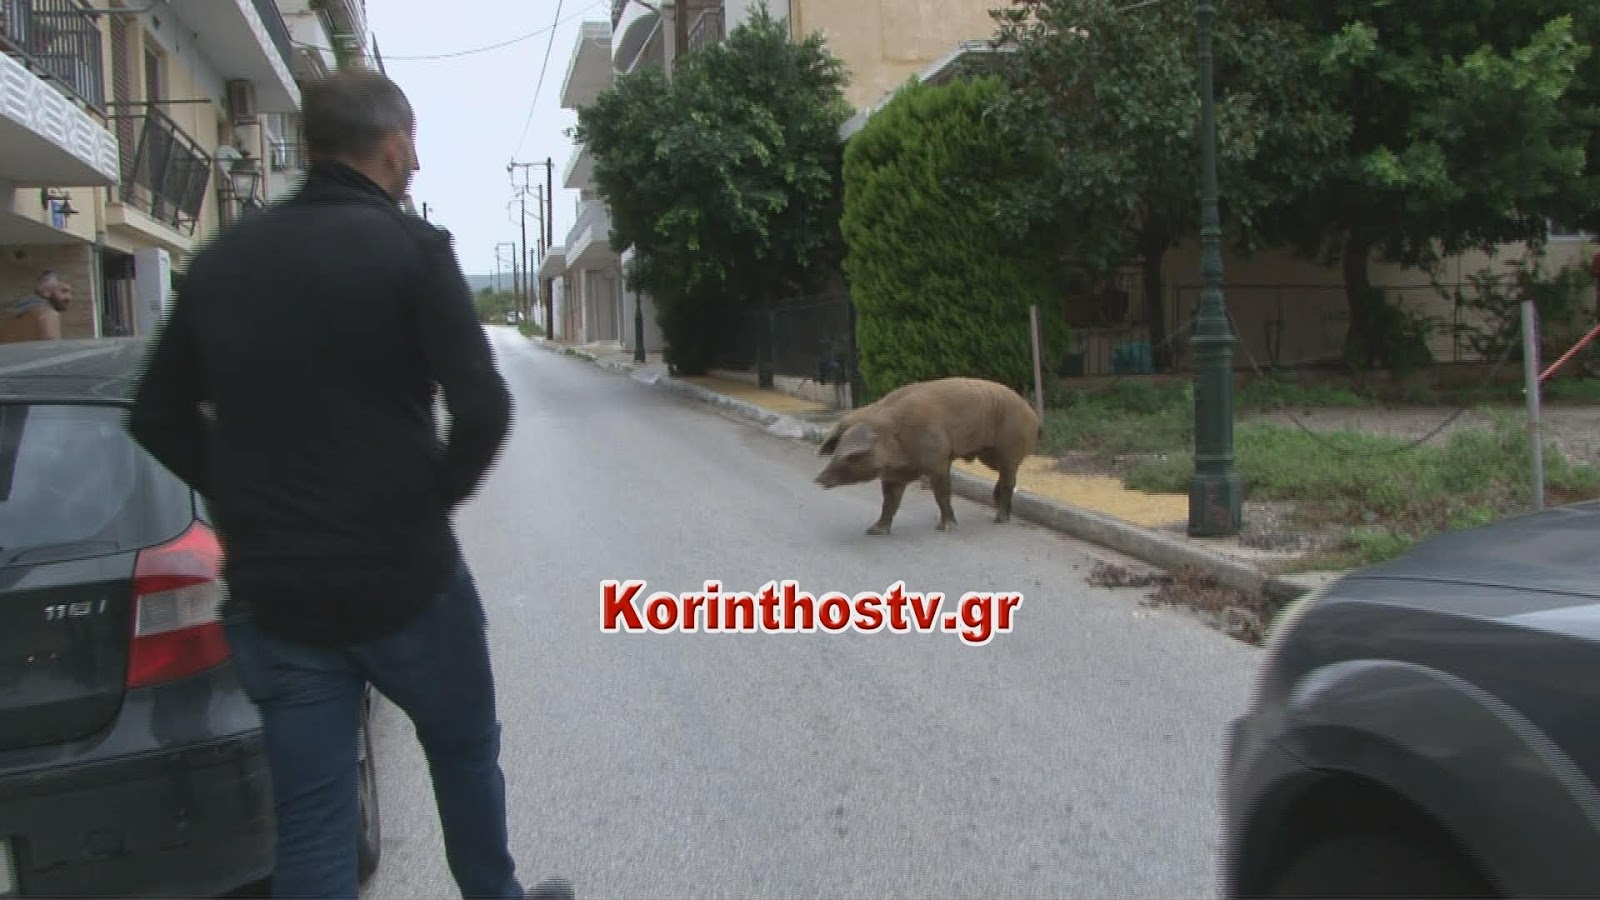 Γουρούνι το έσκασε από στάβλο και κόβει βόλτες στο κέντρο του Λουτρακίου (pics&vid)